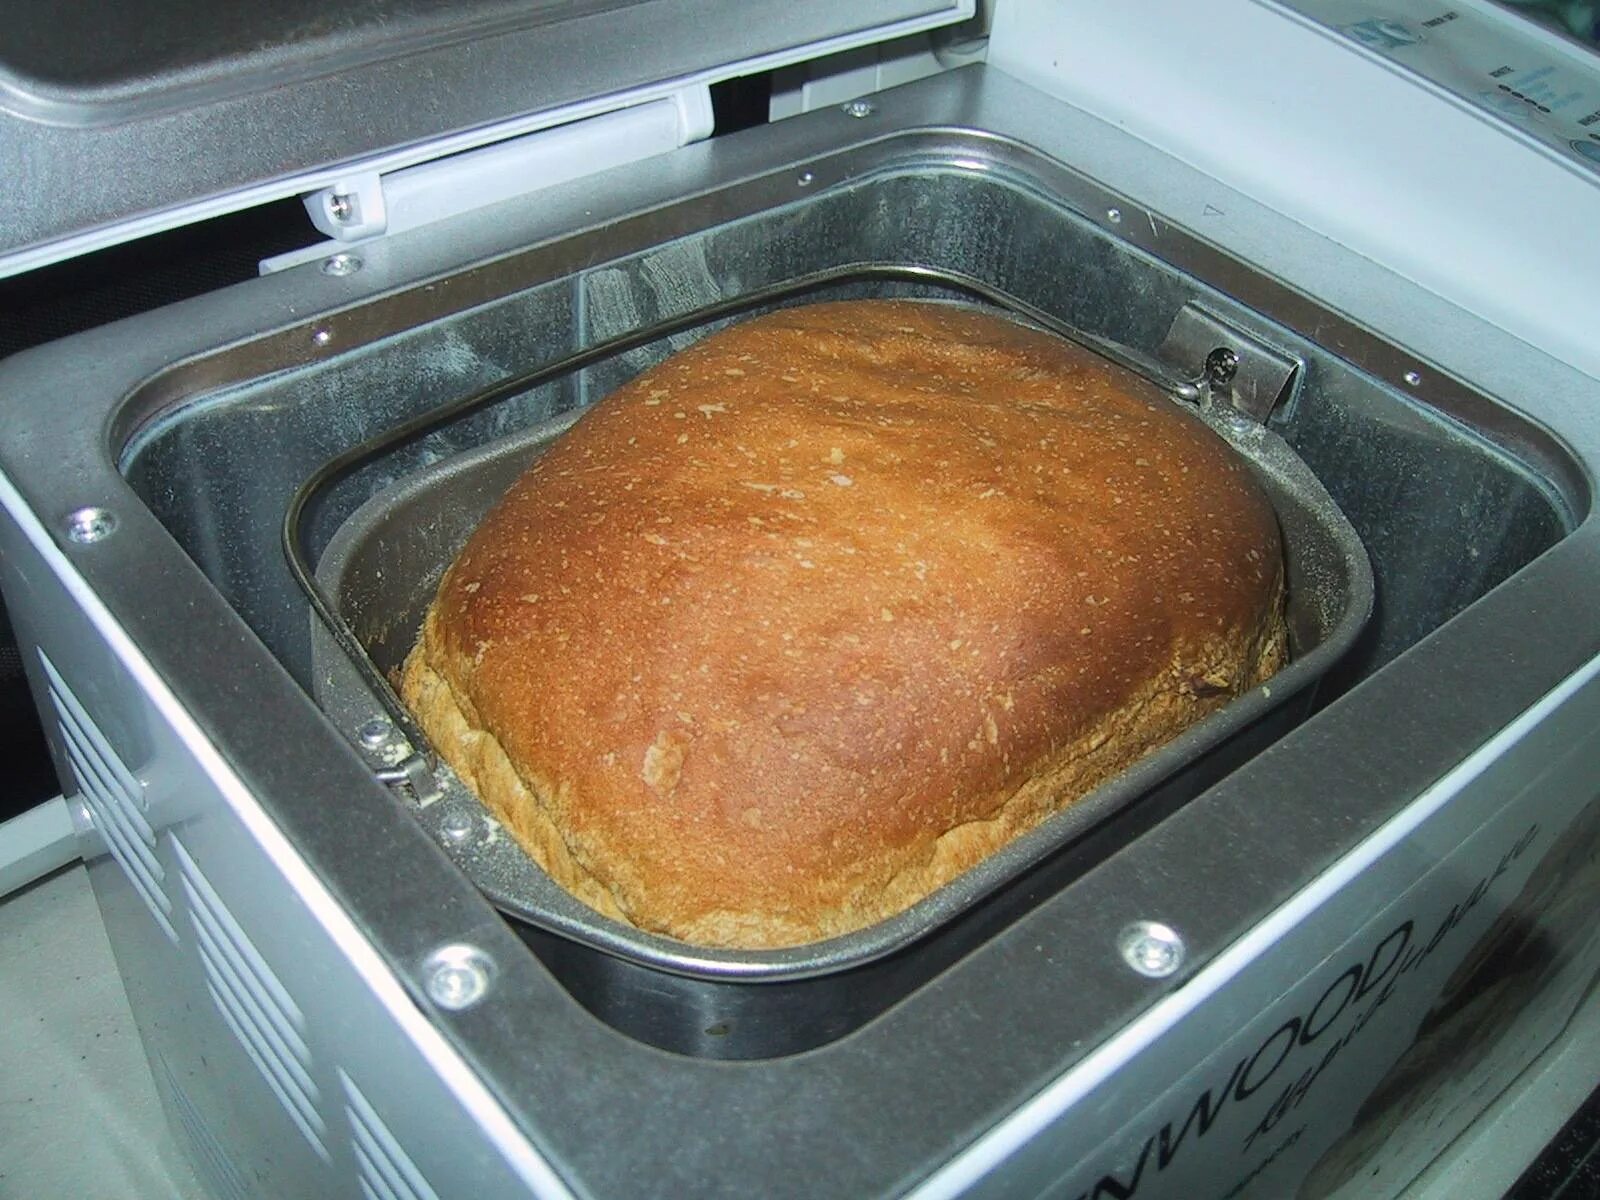 Хлеб после духовки. Хлеб в хлебопечке. Хлебопечка с хлебом. Выпечка хлеба в хлебопечке. Домашний хлеб из хлебопечки.